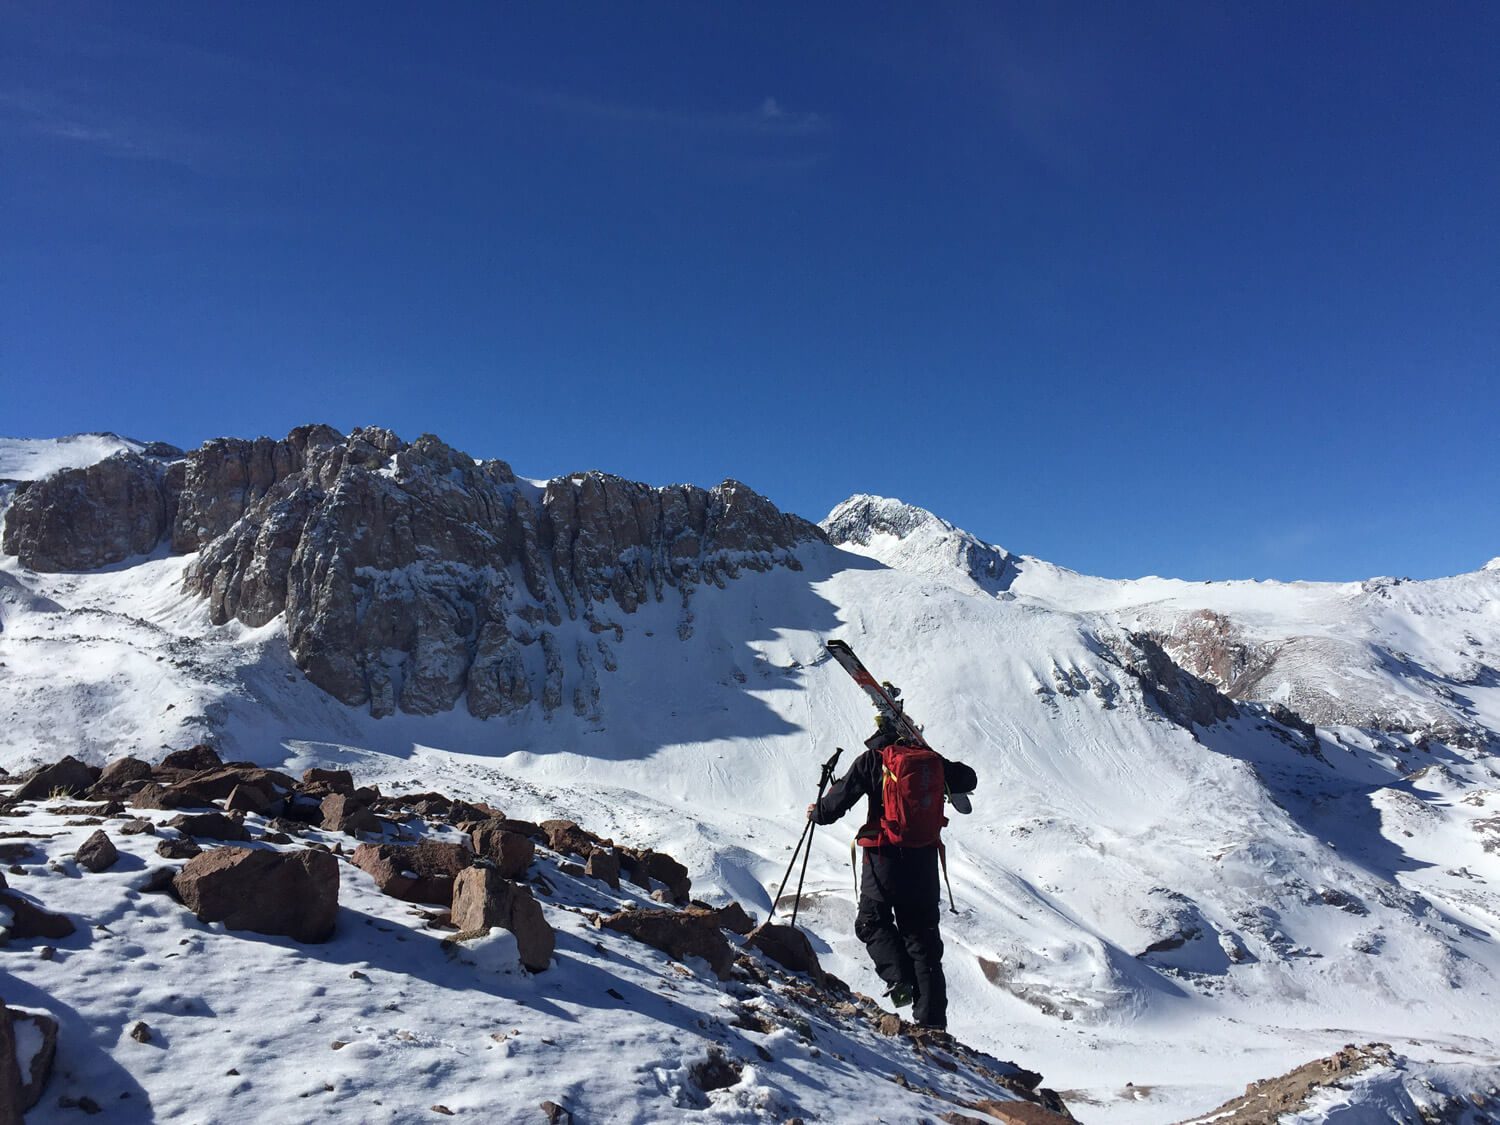 Randonnée en Farellones: una ruta para aventurarse este invierno